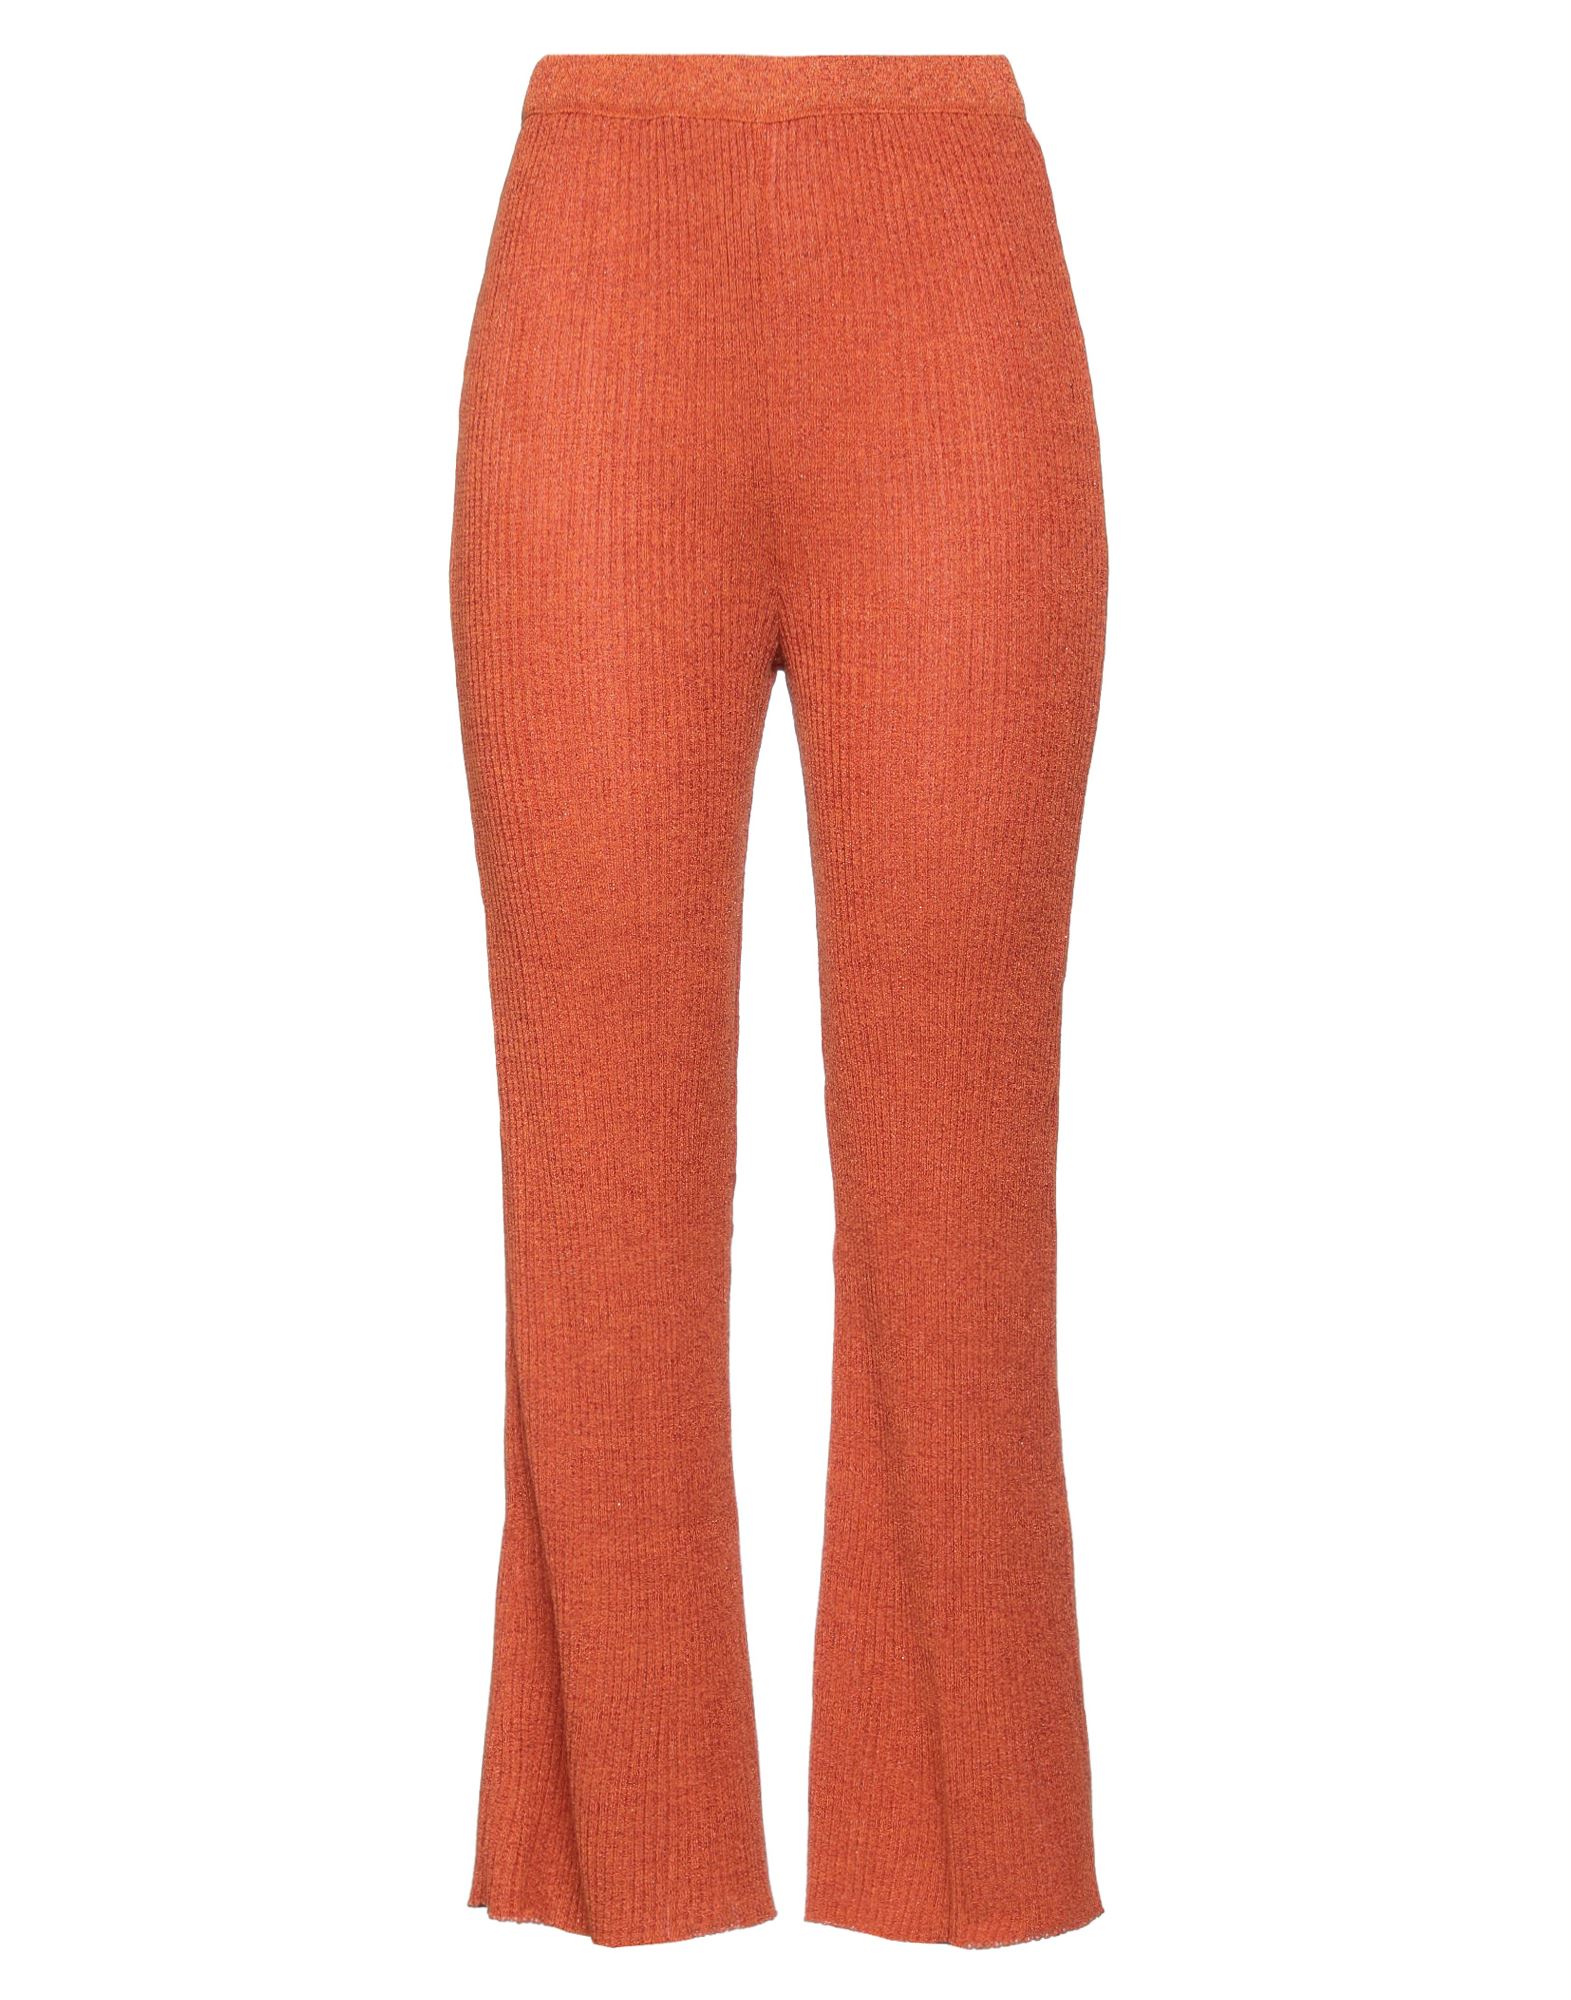 Viki-and Pants In Orange